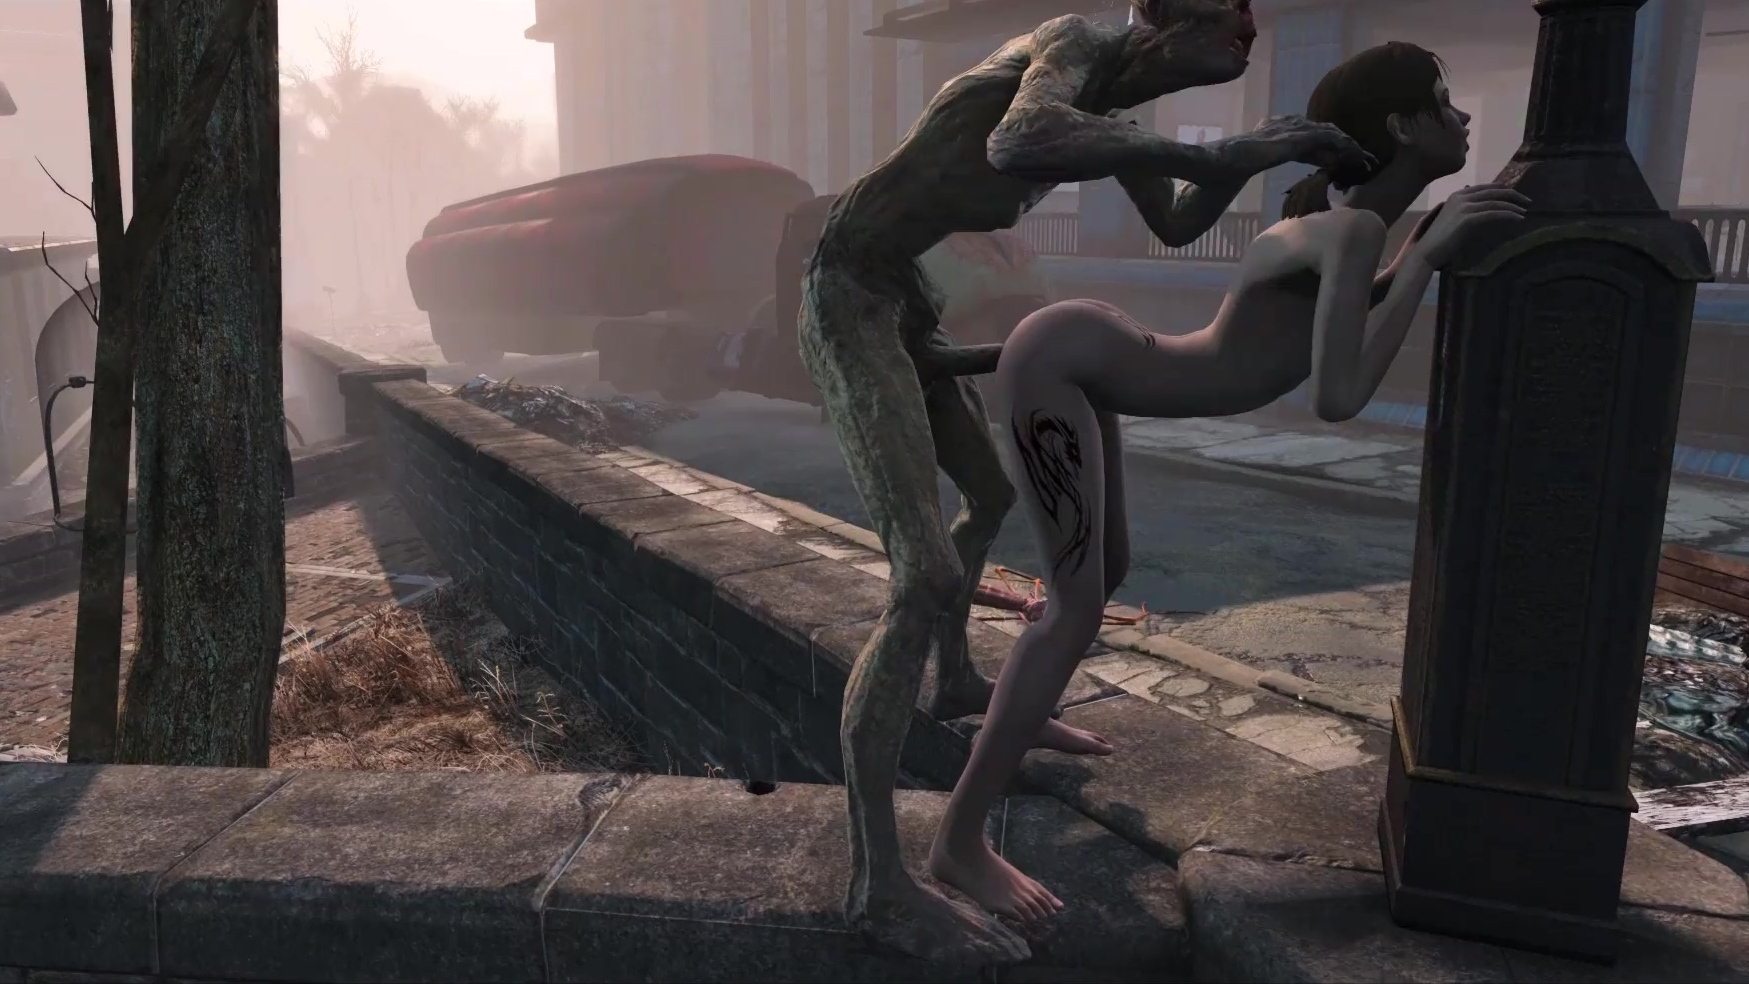 Fallout-Pornoparodie Dünne Schönheit wird in einer postapokalyptischen Welt von einem Zombie gefickt Bild